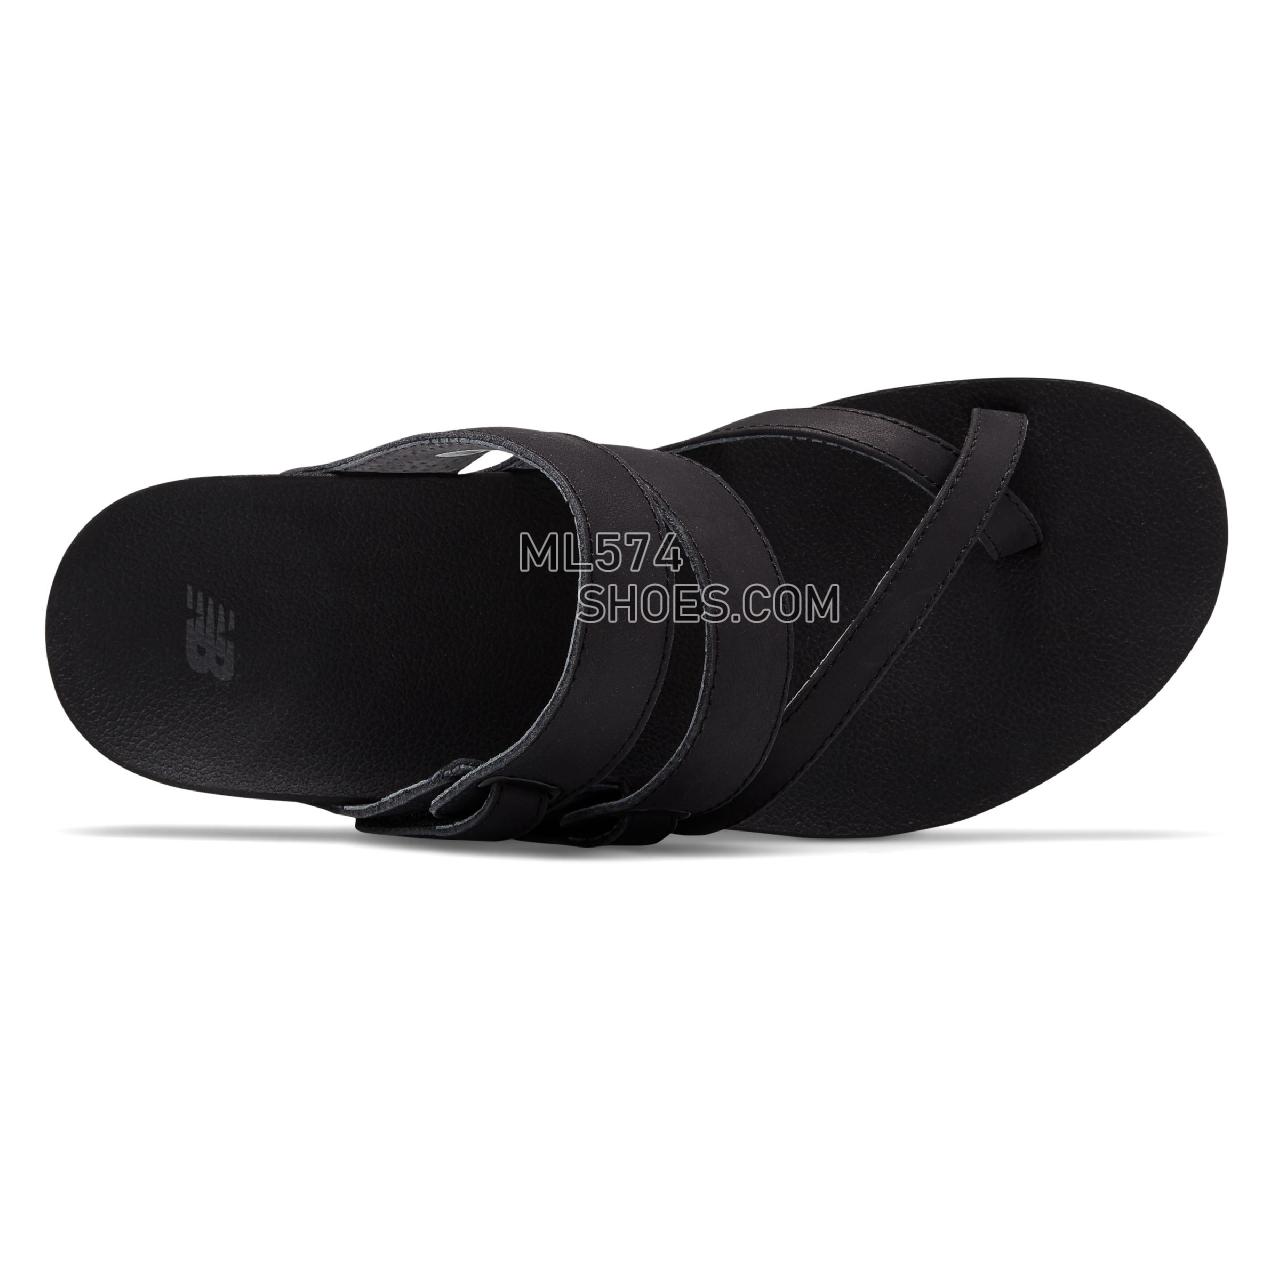 New Balance Traveler Sandal - Women's 3101 - Sandals Black - WR3101BK